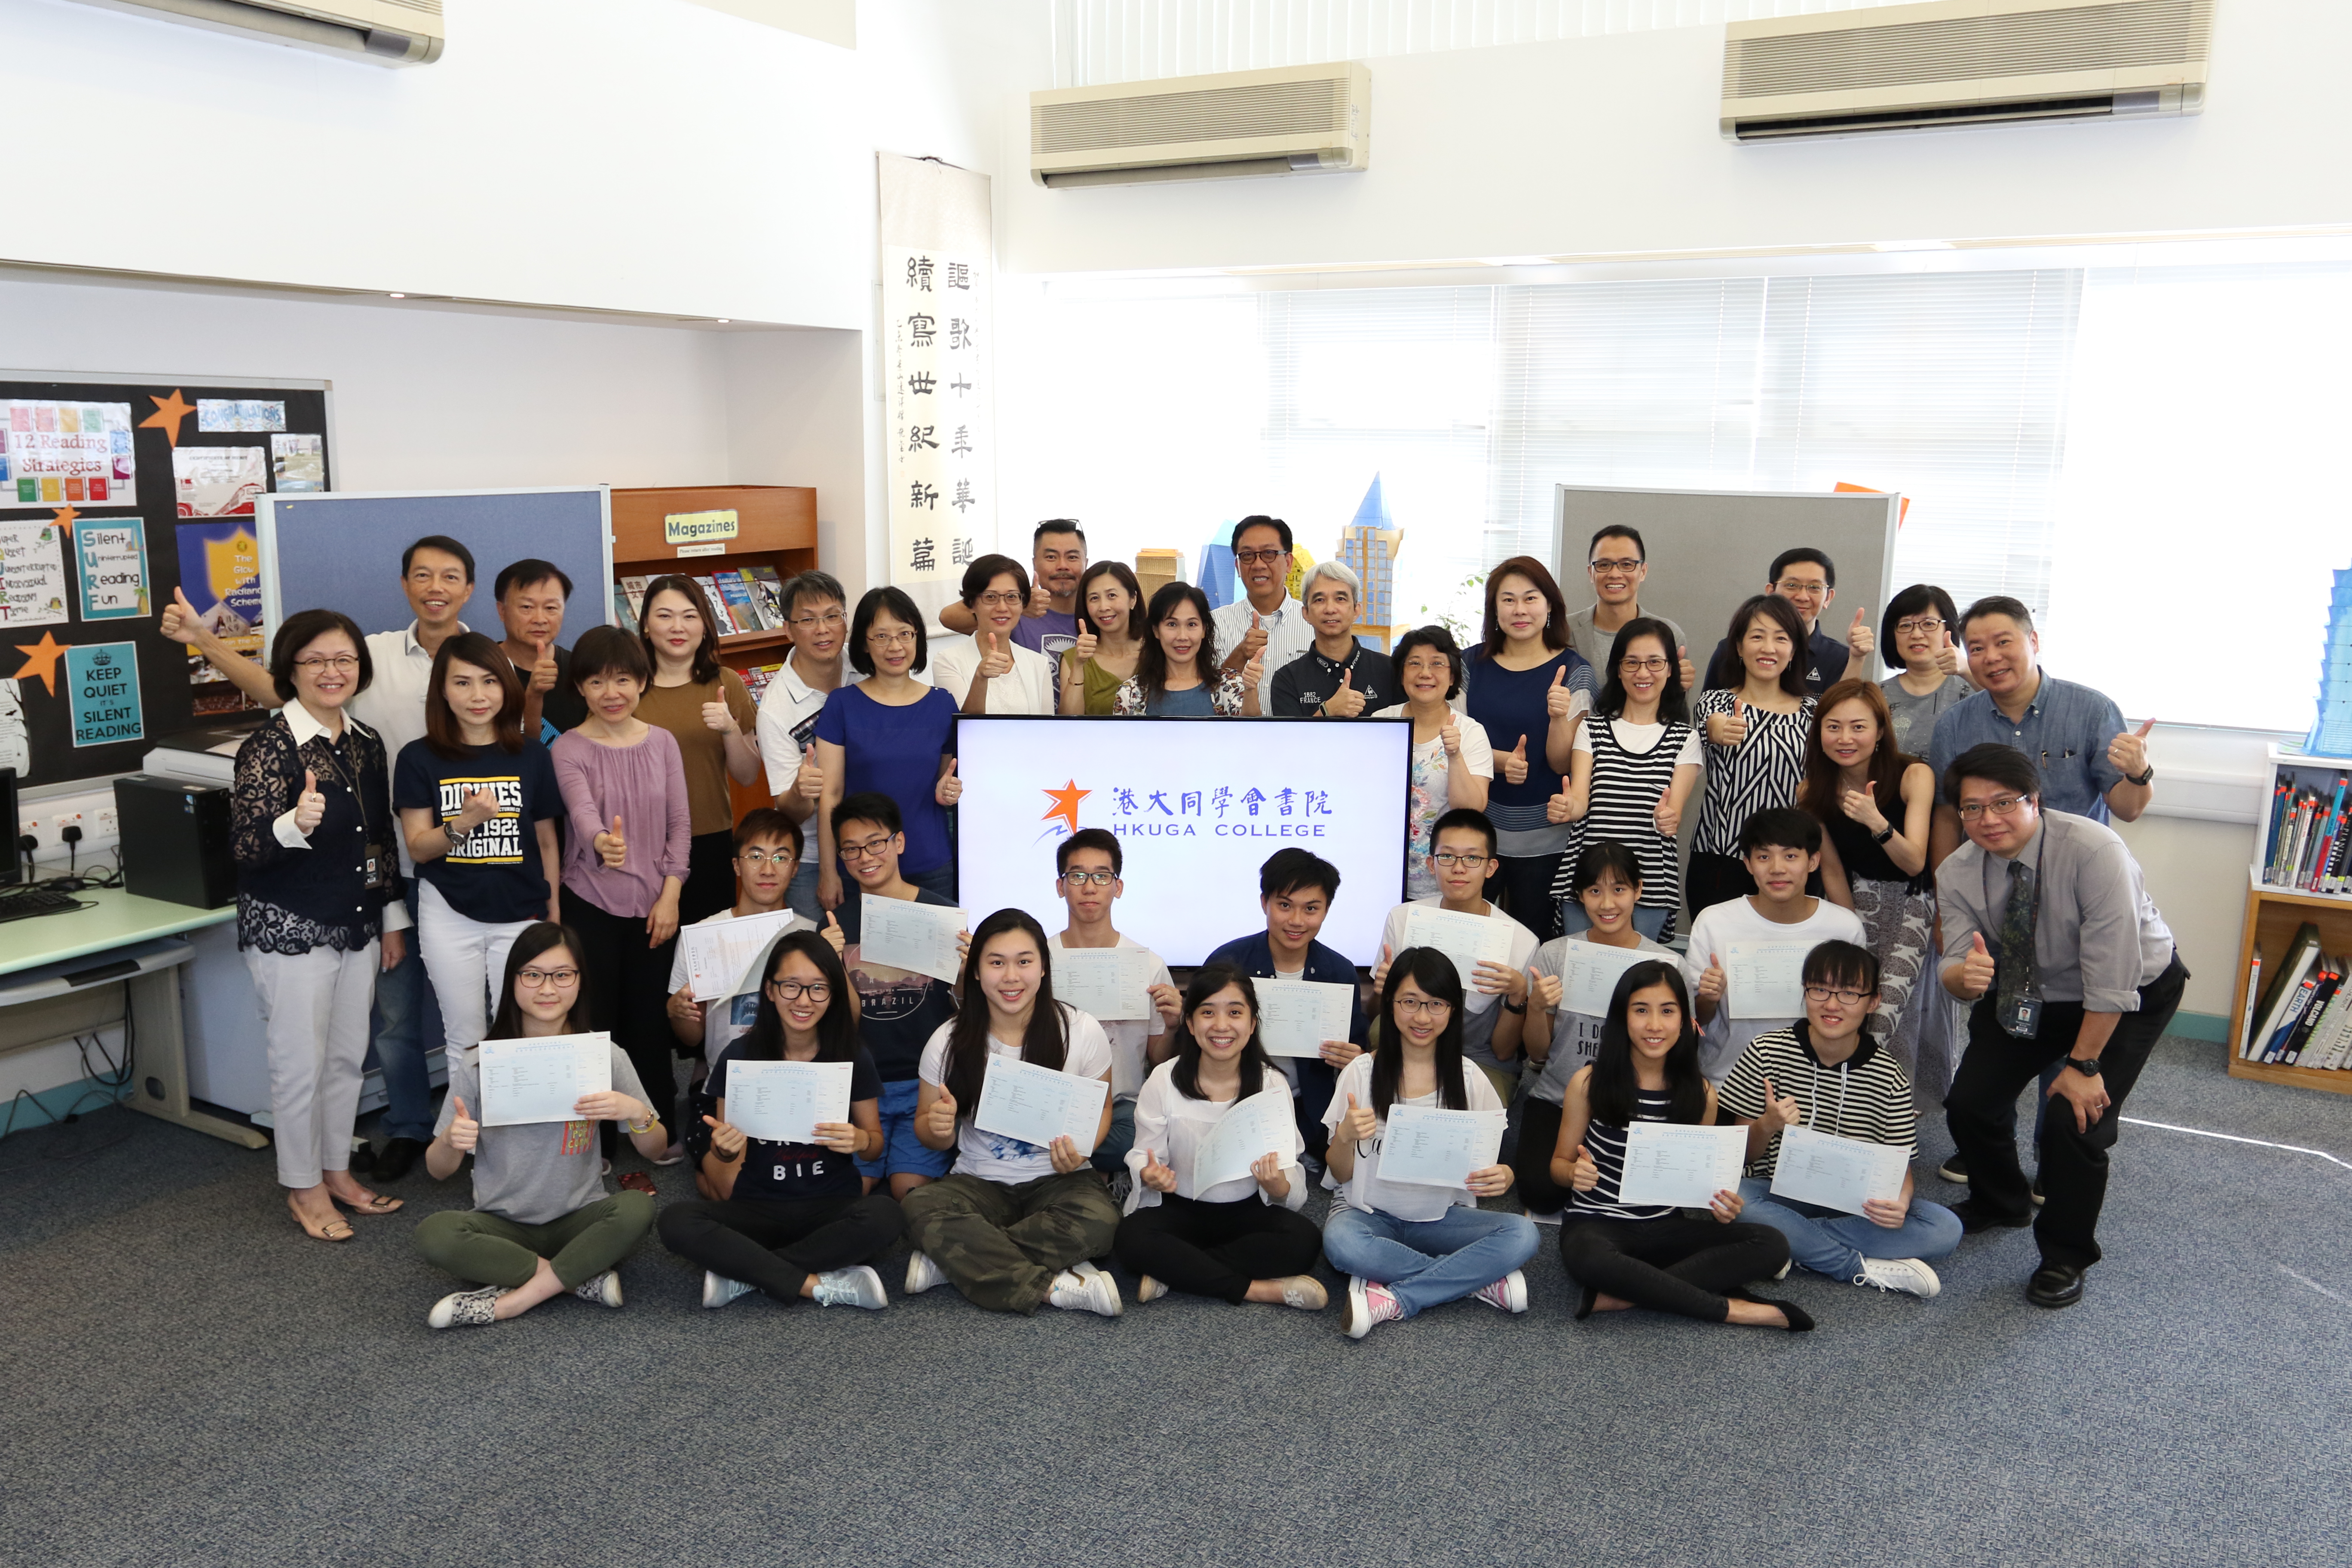 恭喜「書院」的畢業生在香港中學文憑考試取得良好的成績